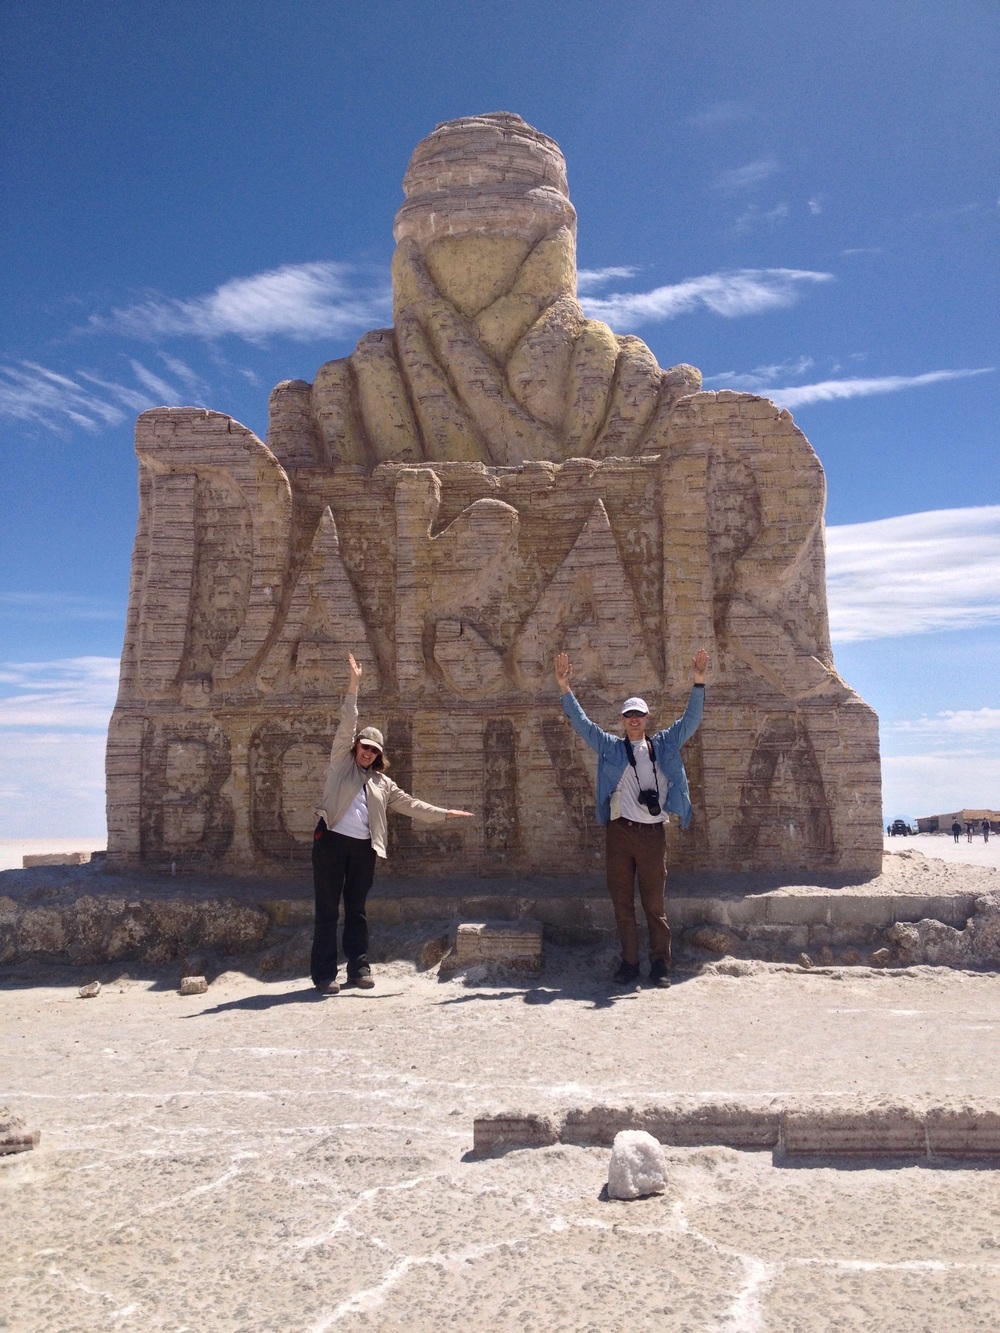 The 2014 Dakar salt statue